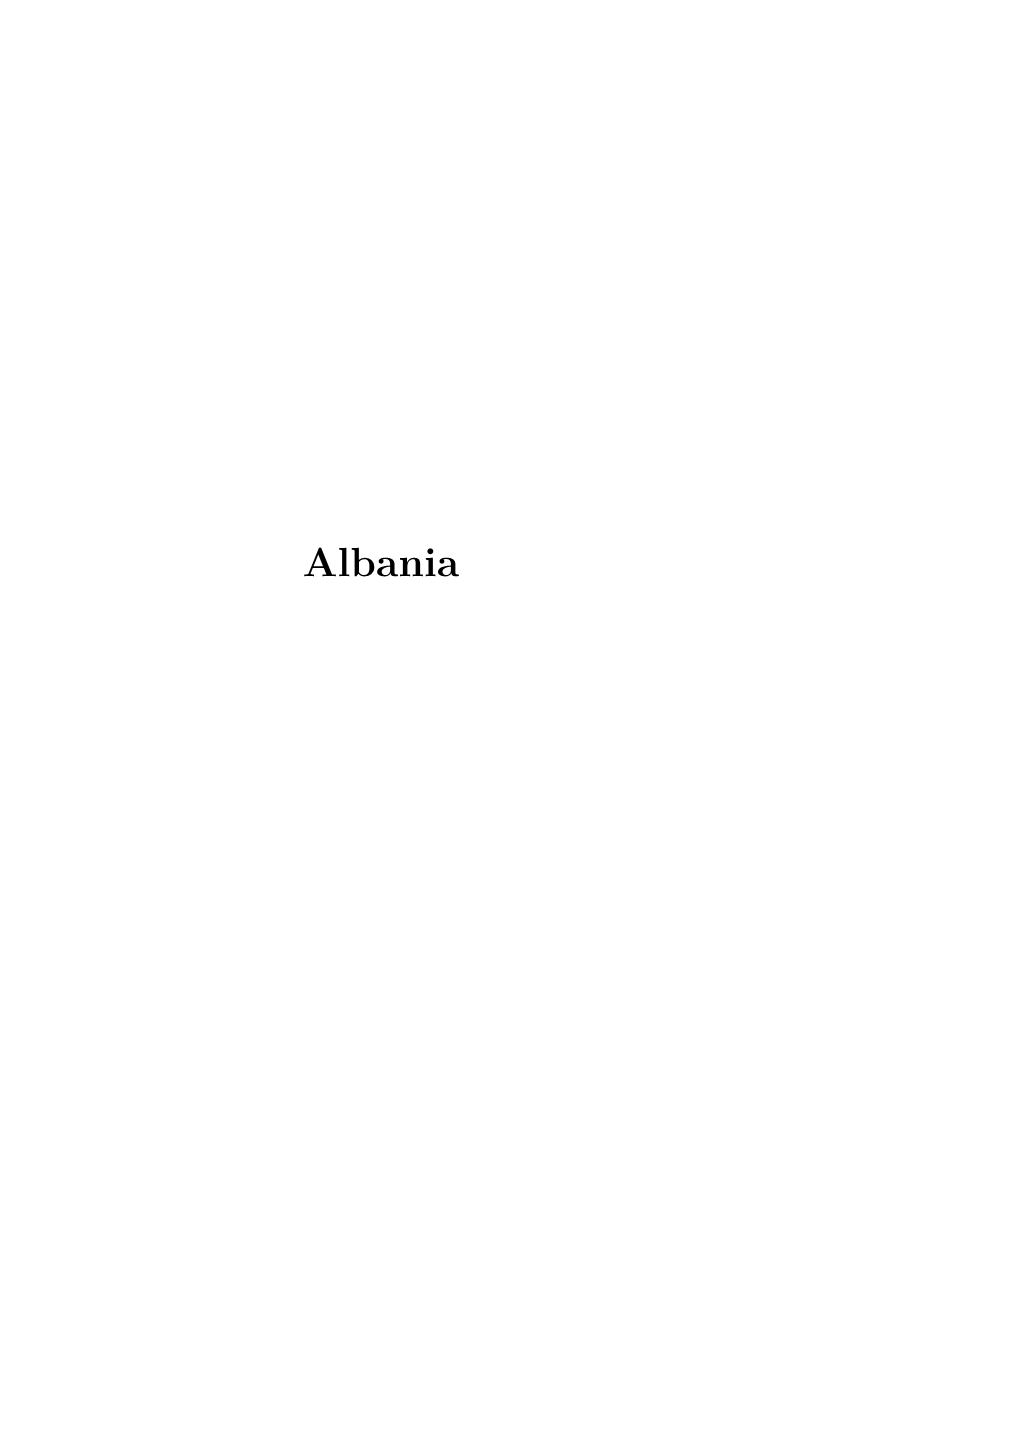 Ethnicity in Albania